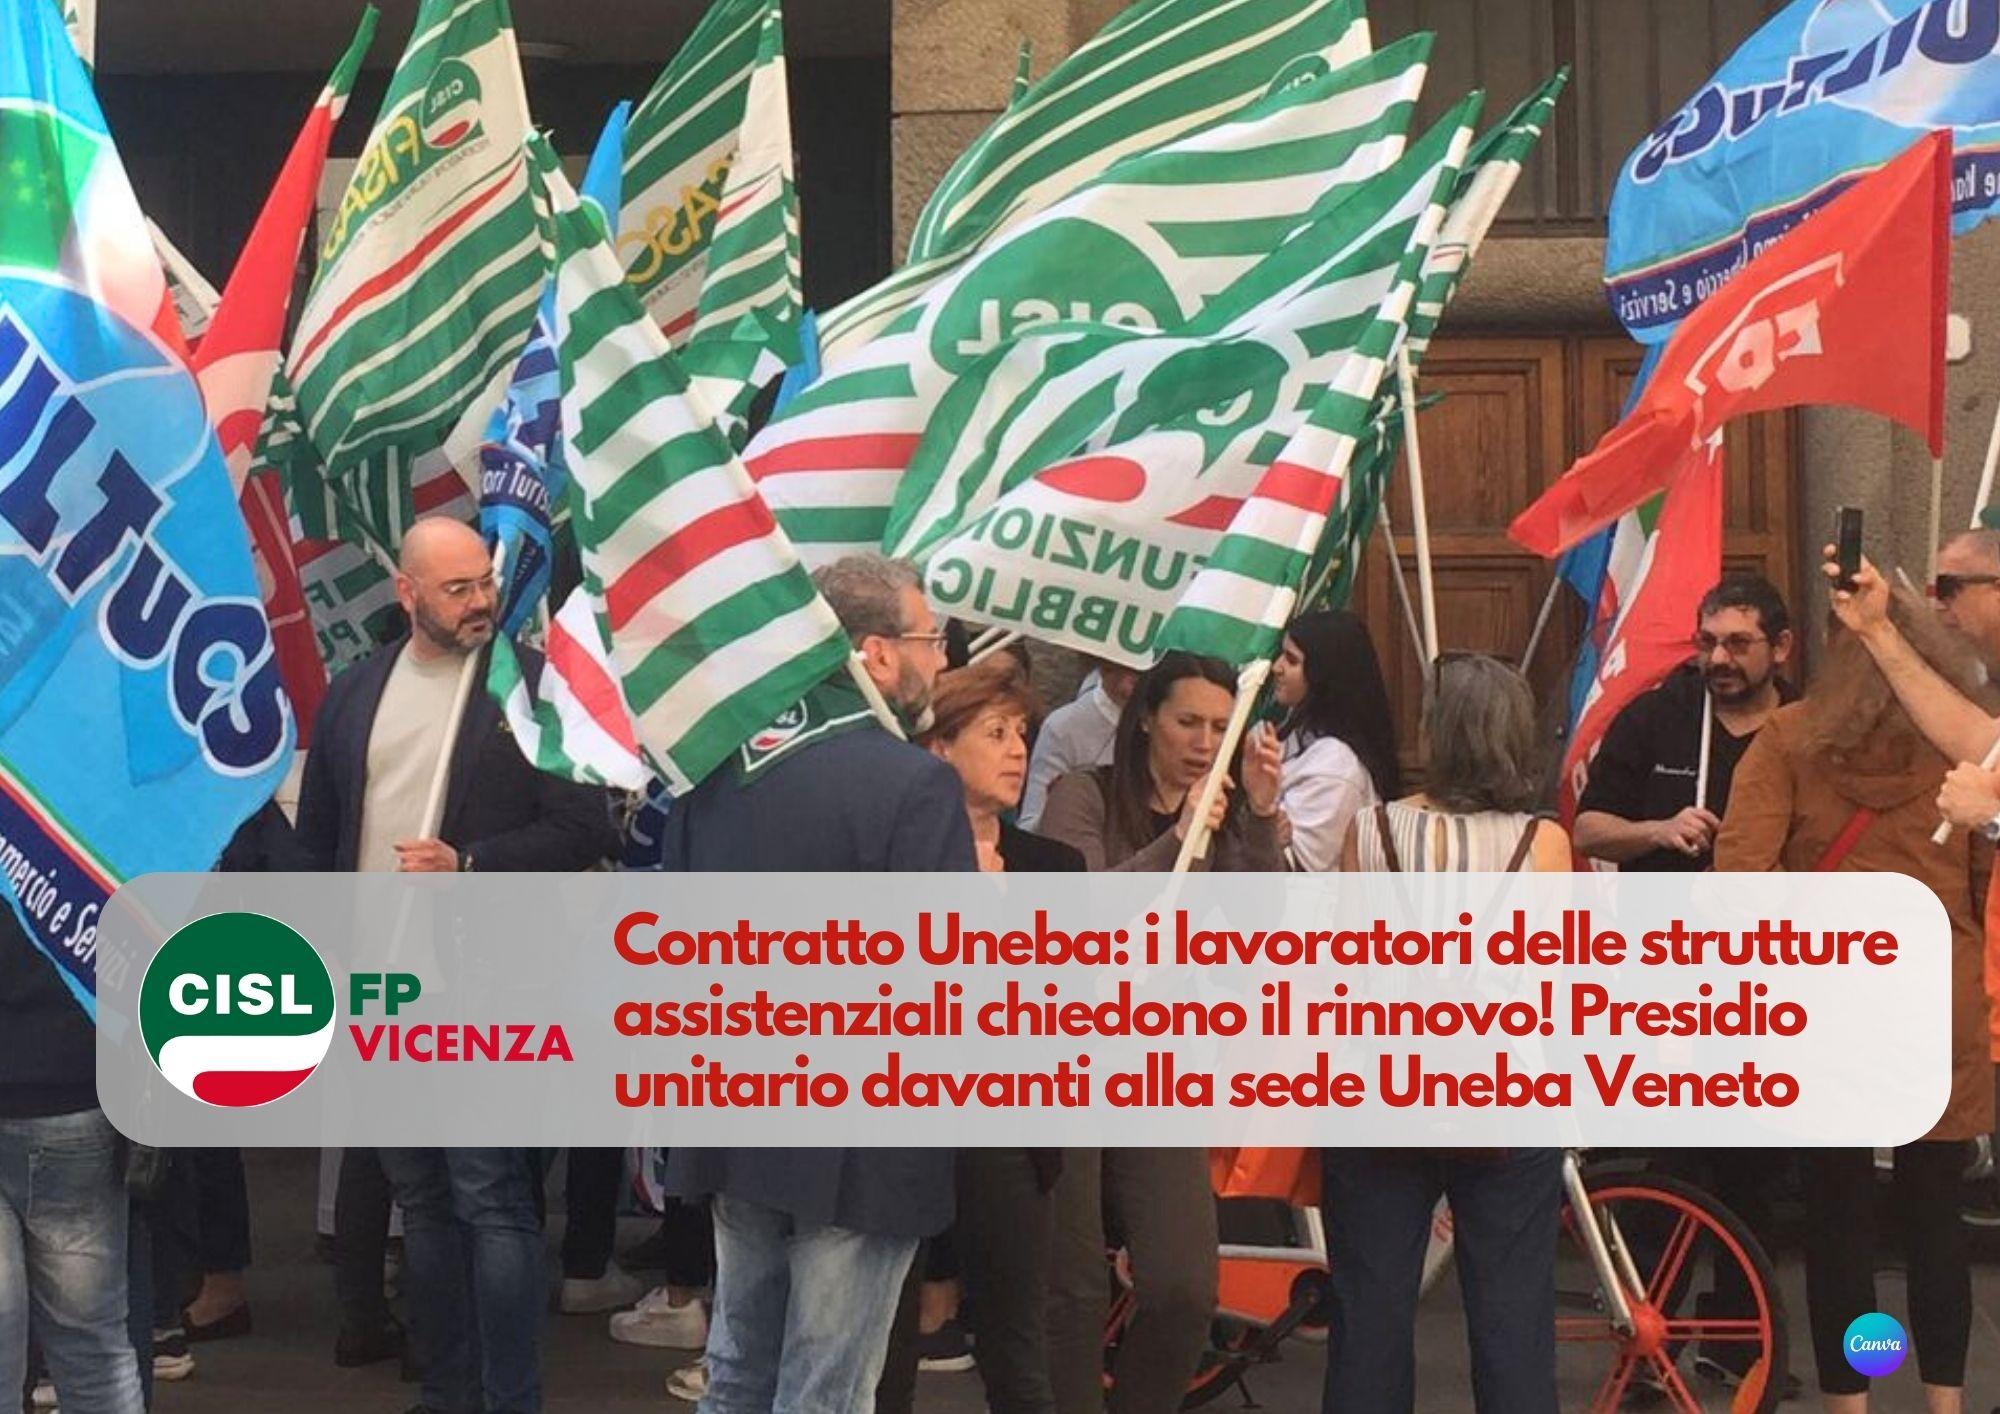 CISL FP Vicenza. Contratto Uneba: i lavoratori delle strutture assistenziali chiedono il rinnovo!